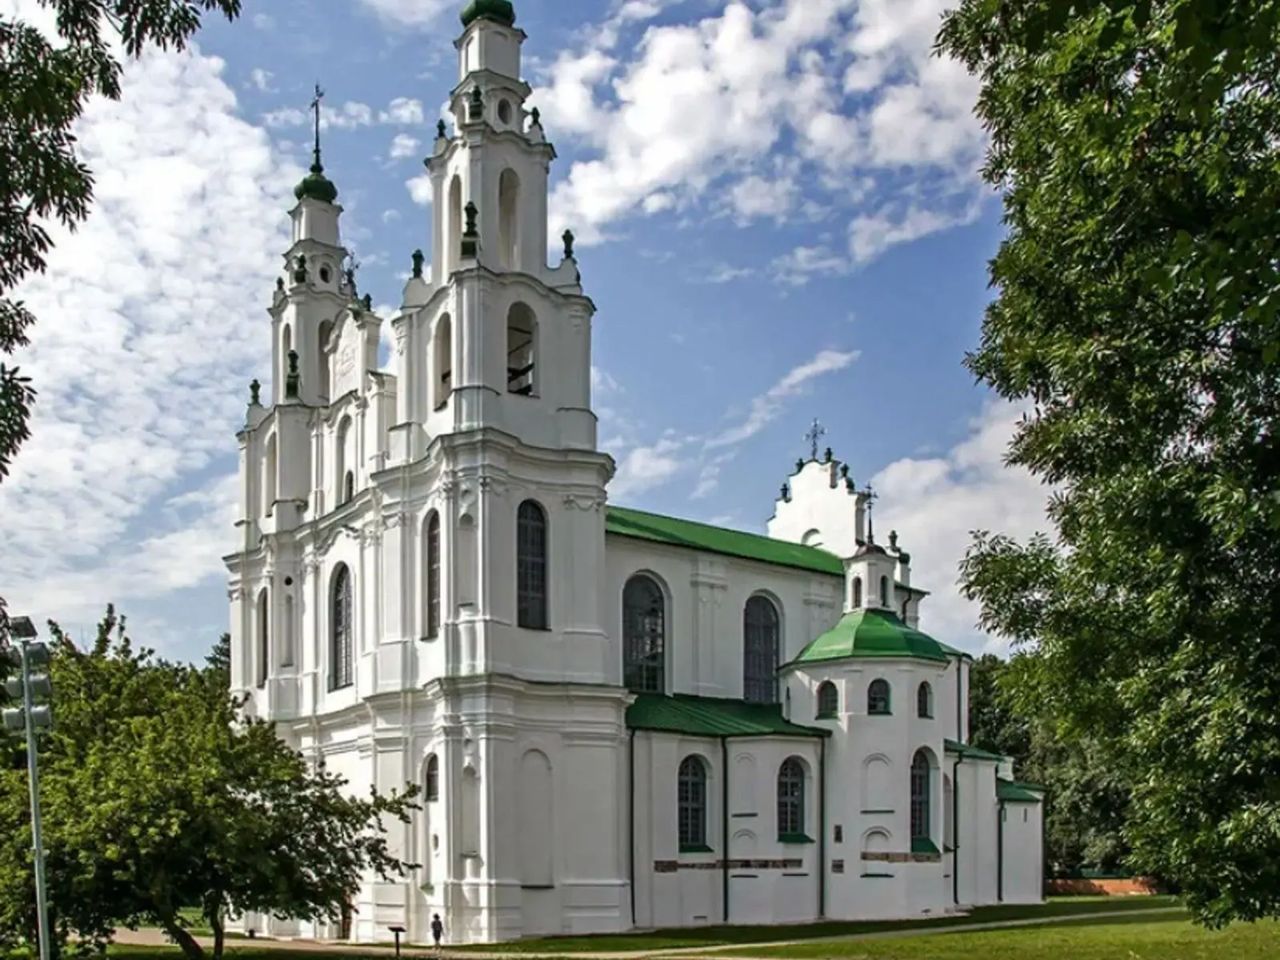 Полоцк — самый древний город Беларуси  | Цена 280€, отзывы, описание экскурсии